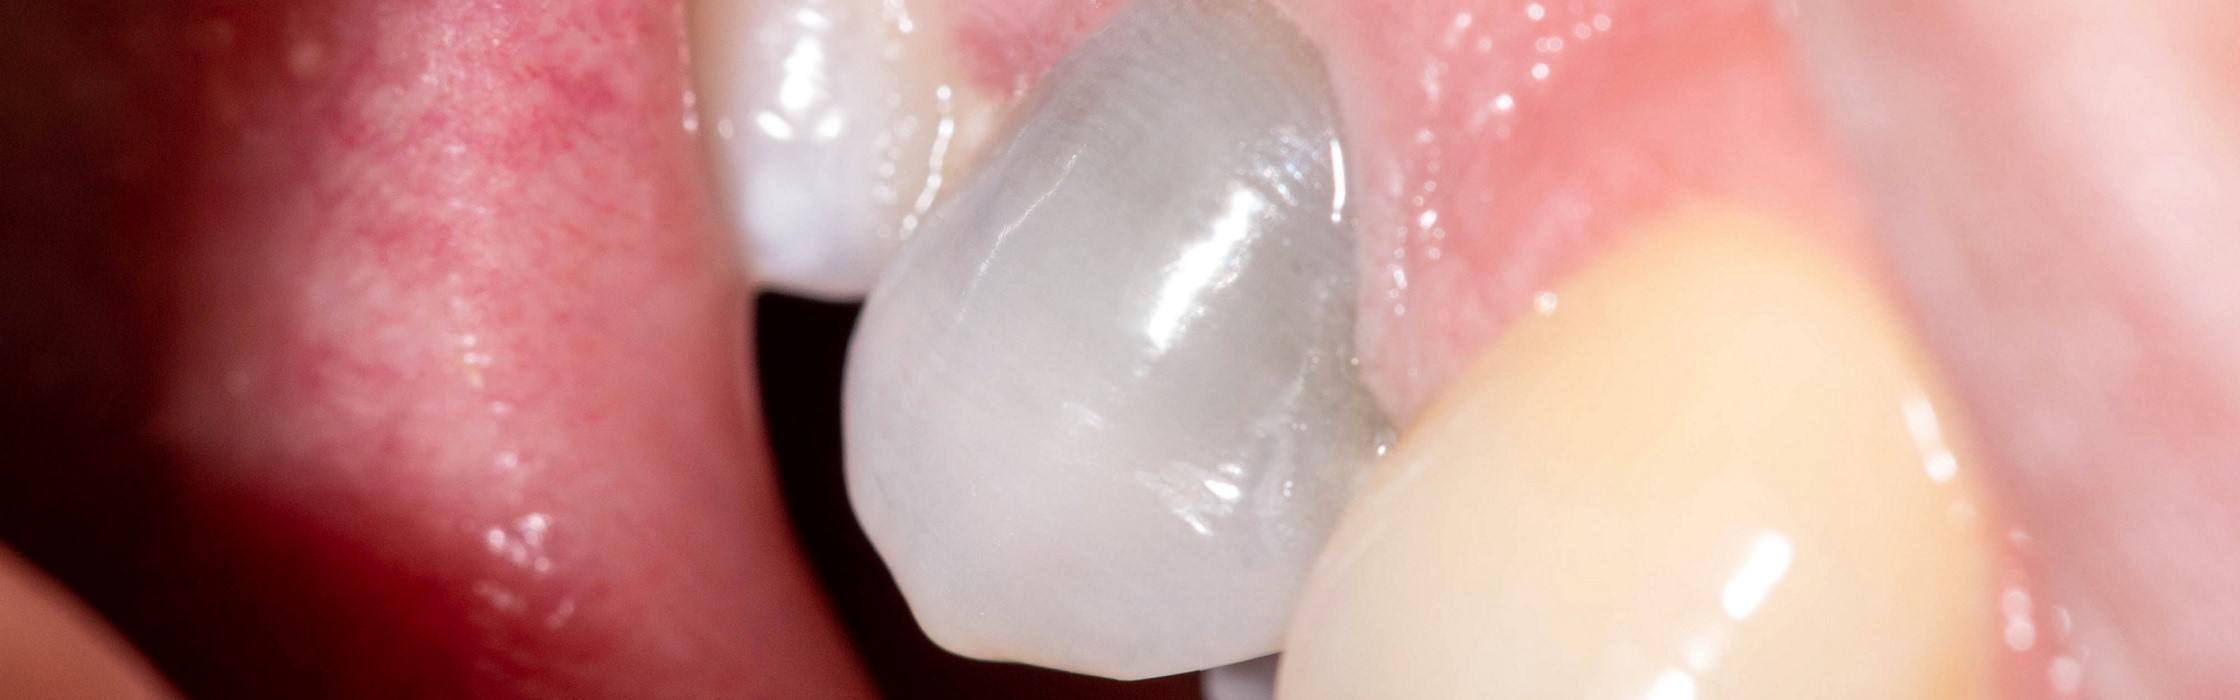 Toter Zahn: Symptome und Behandlungsmöglichkeiten